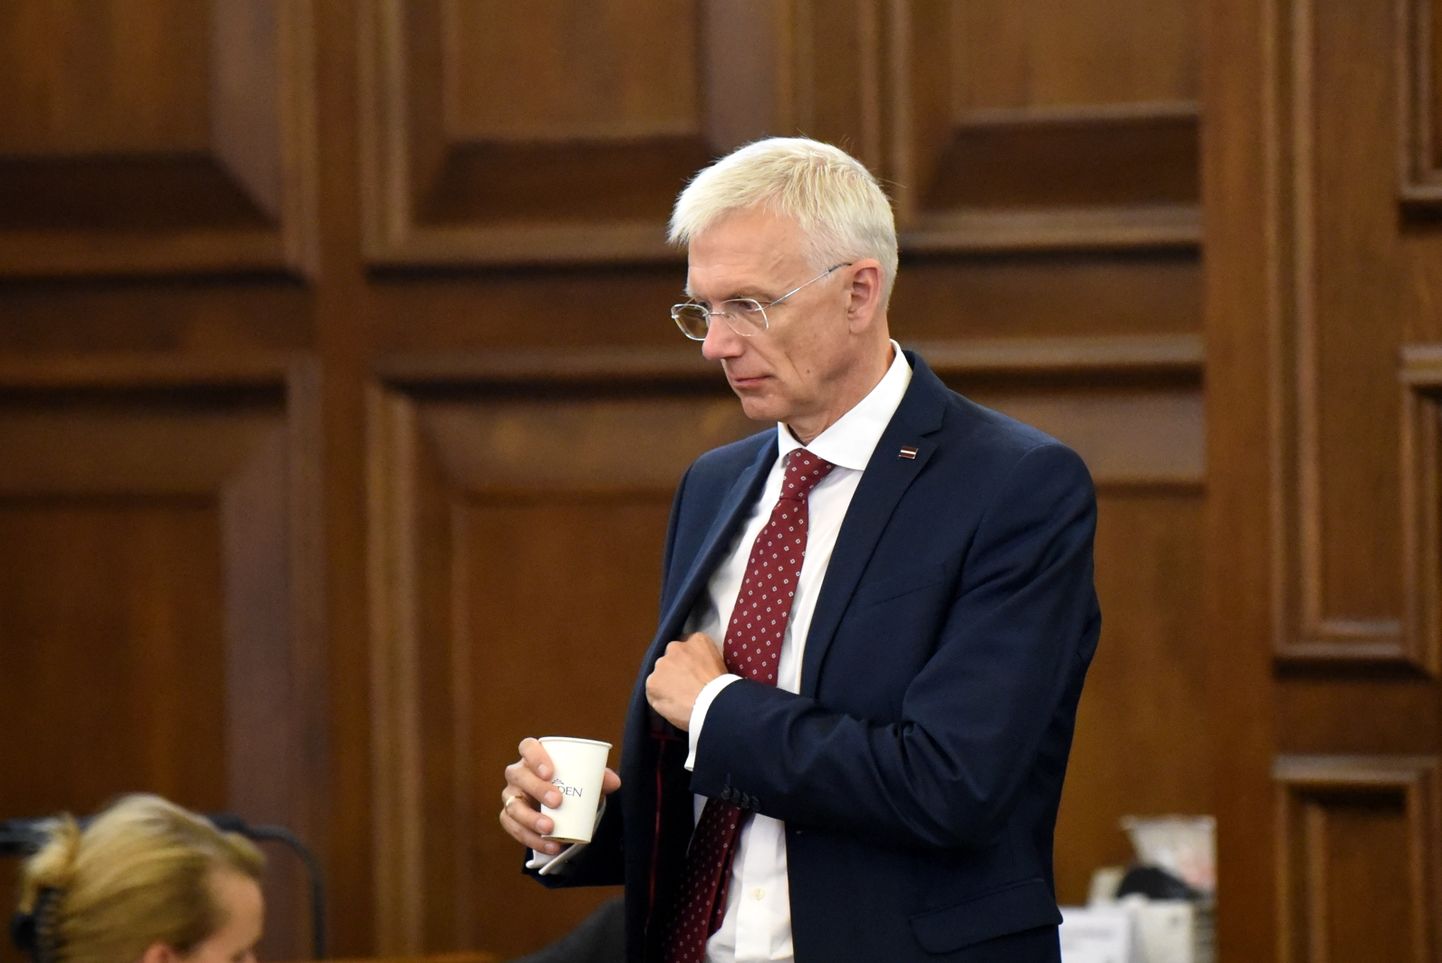 Līdzšinējais Ministru prezidents Krišjānis Kariņš Saeimas ārkārtas sēdes laikā, kurā paredzēts balsojums par uzticības izteikšanu Evikas Siliņas izveidotajam Ministru kabinetam.